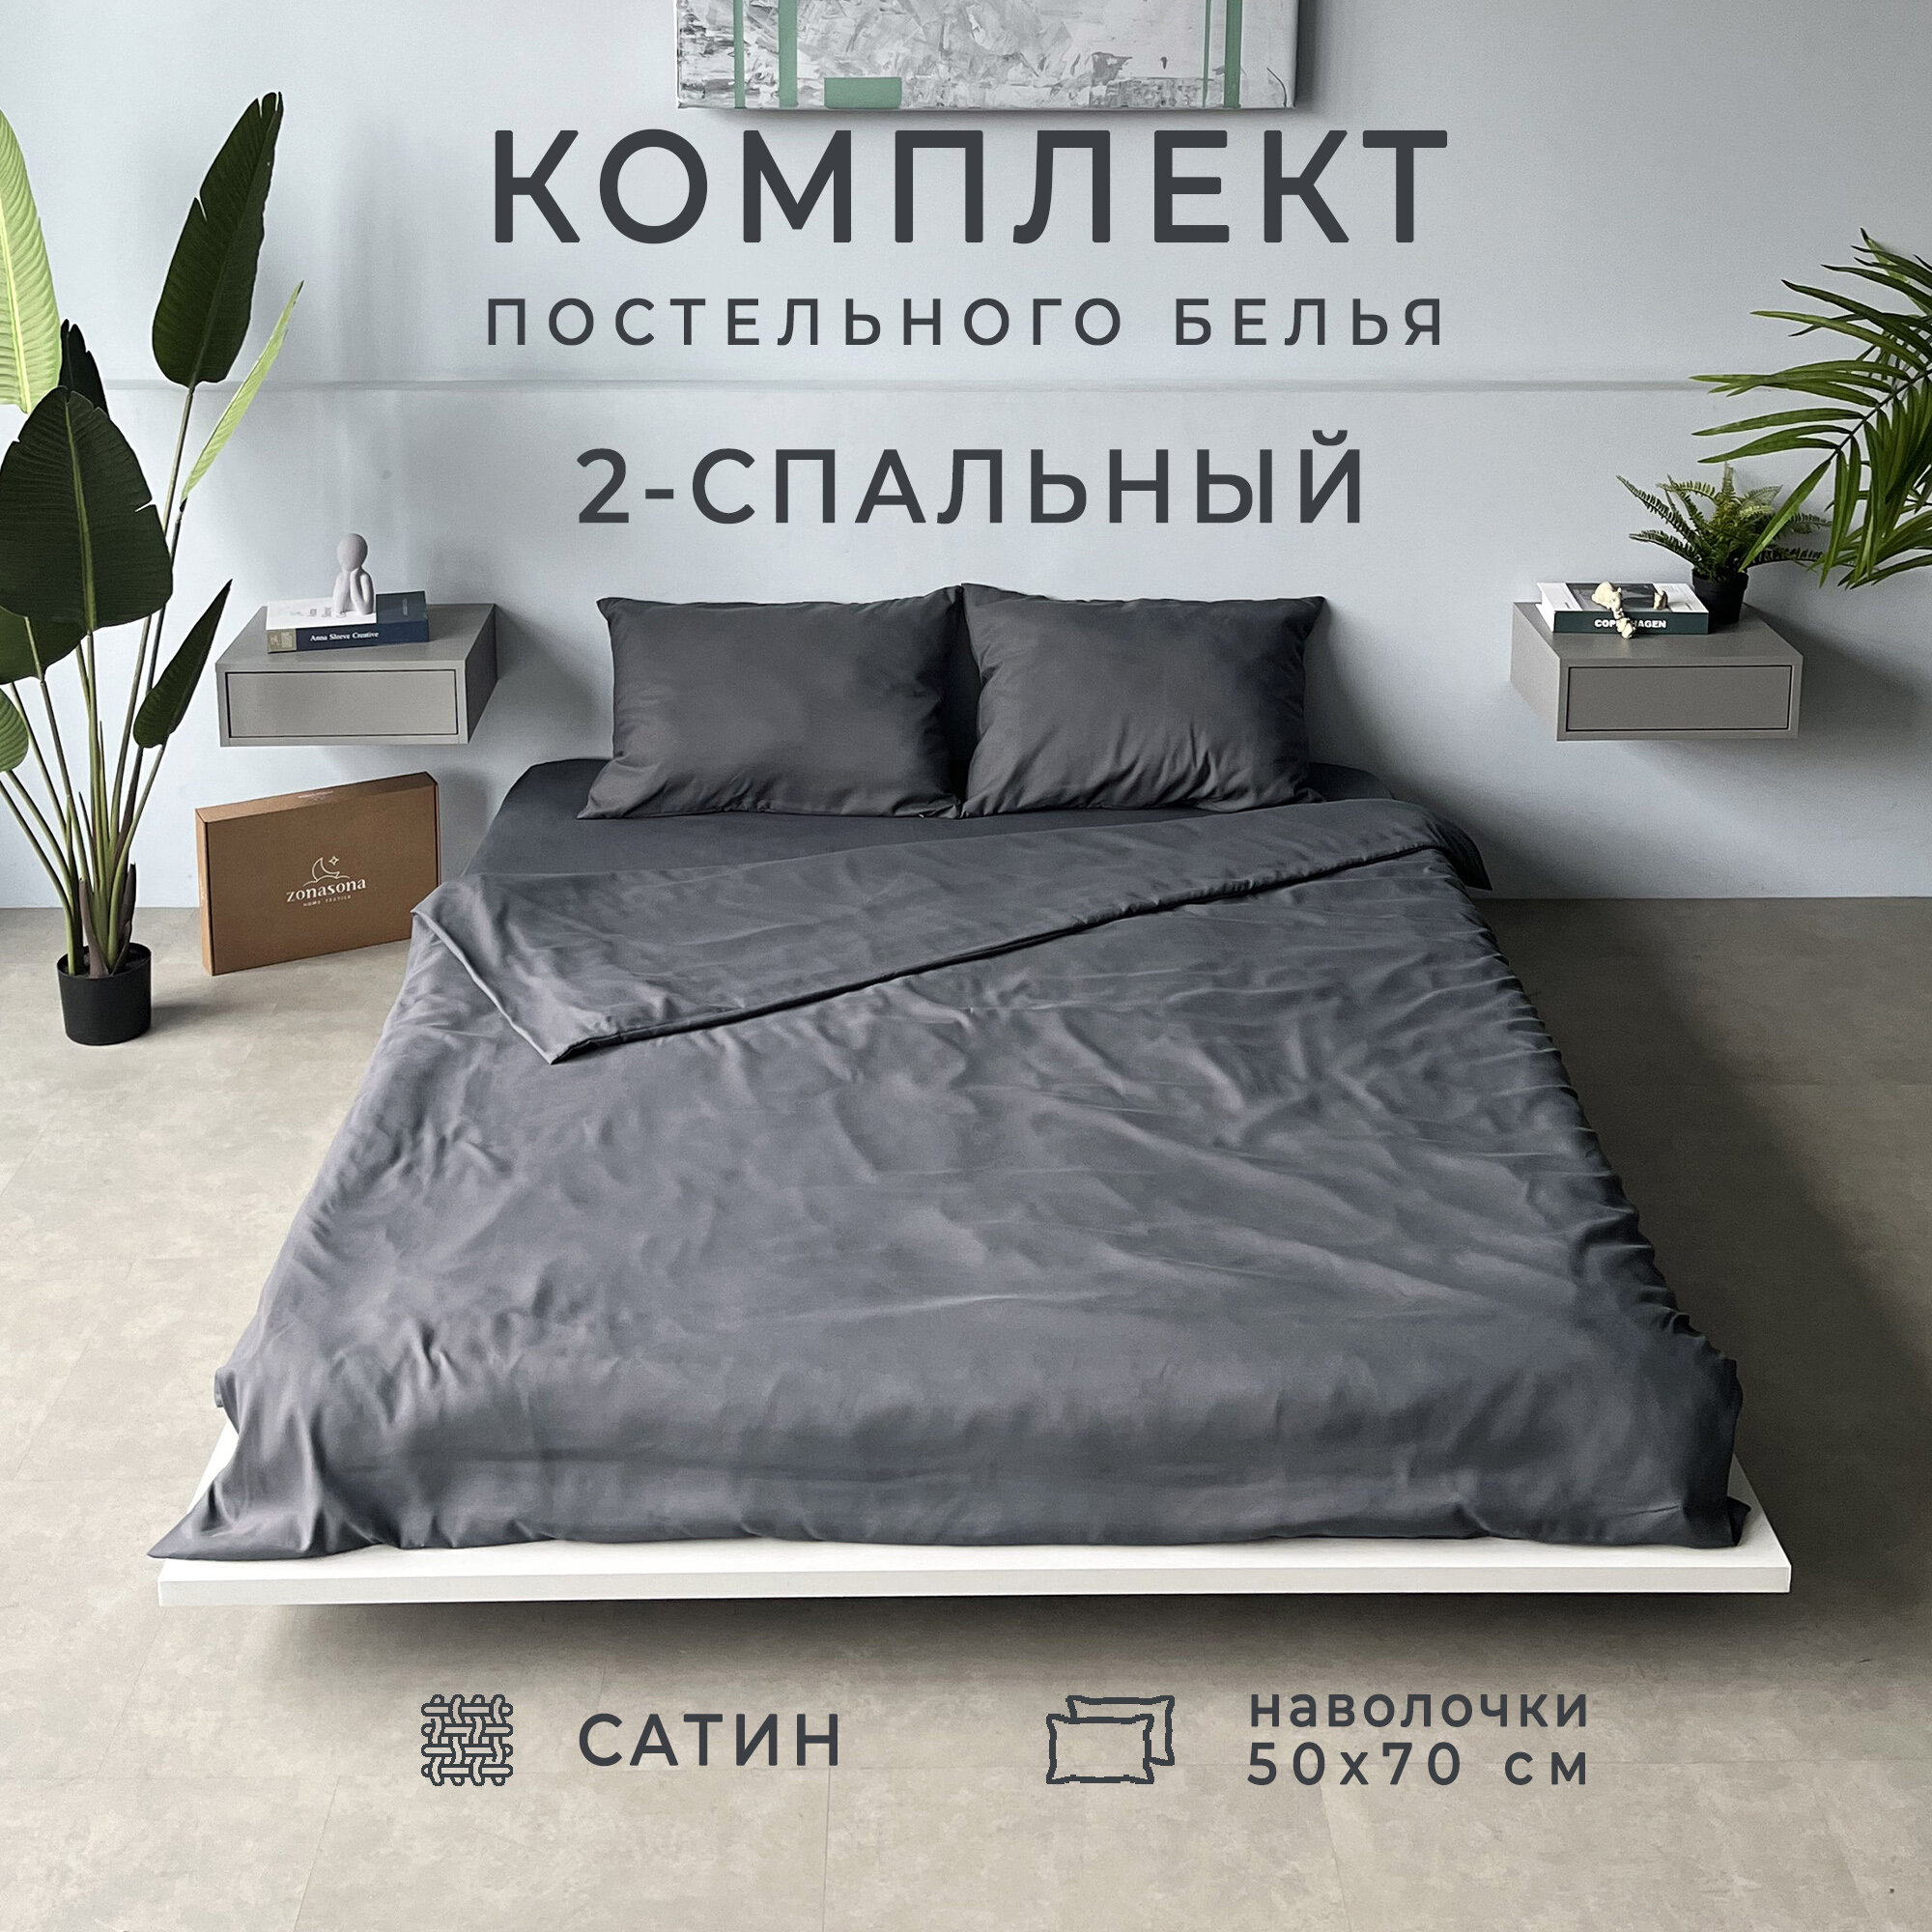 Комплект постельного белья ZonaSona однотонный Графит, 2 спальный, сатин, наволочки 50х70 2 шт.